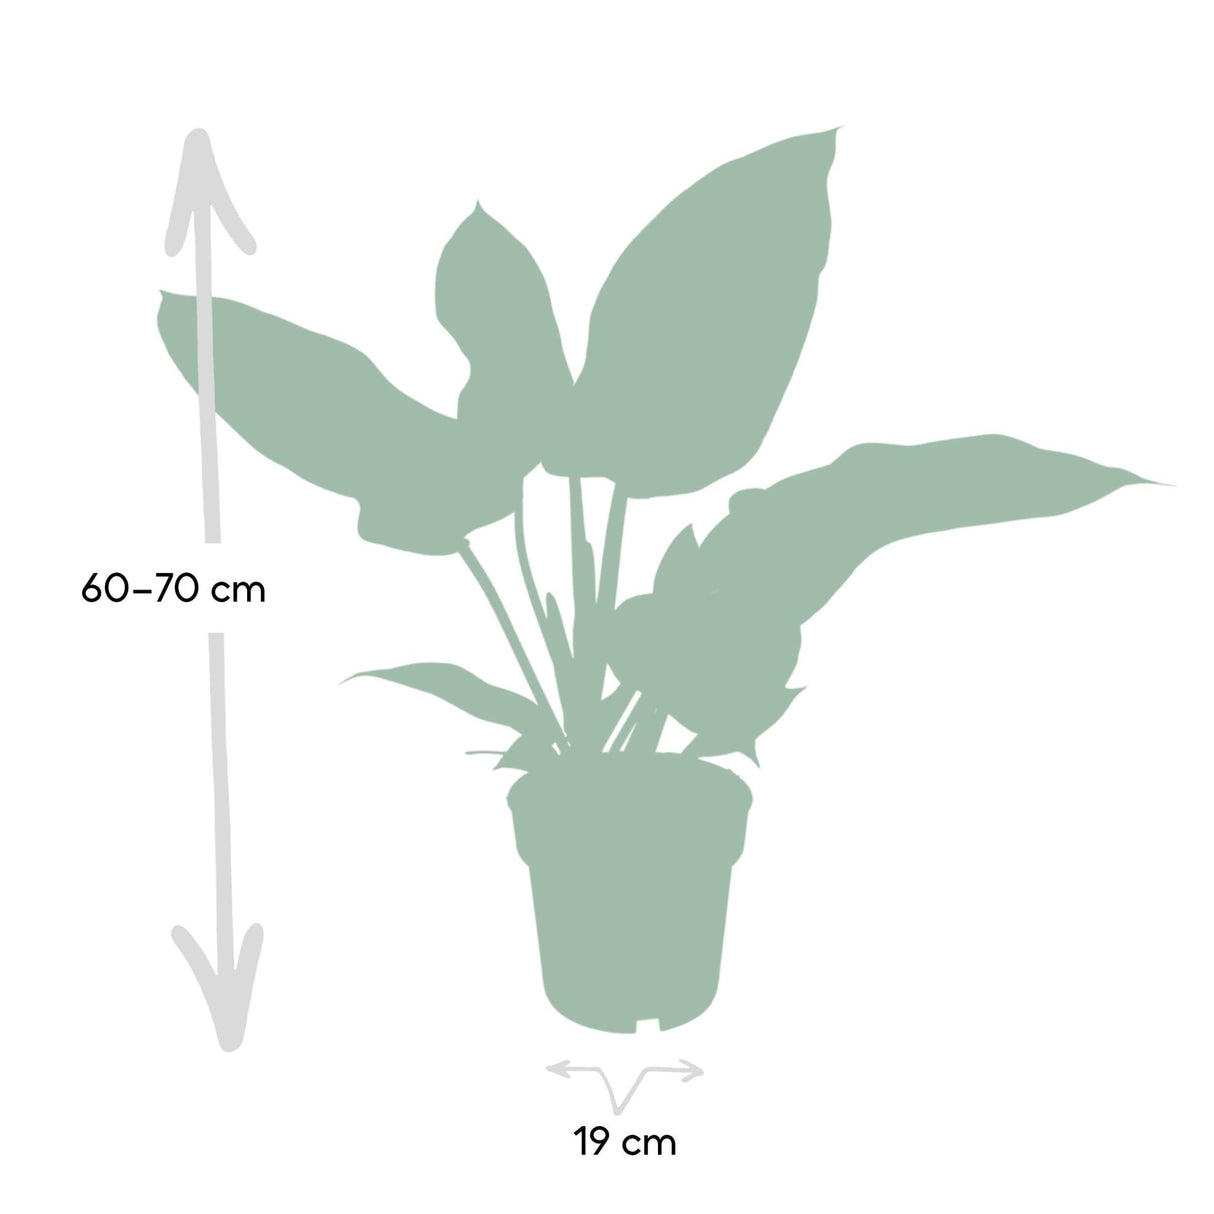 Livraison plante - Philodendron Imperial Green - h65cm - Ø19cm - plante d'intérieur